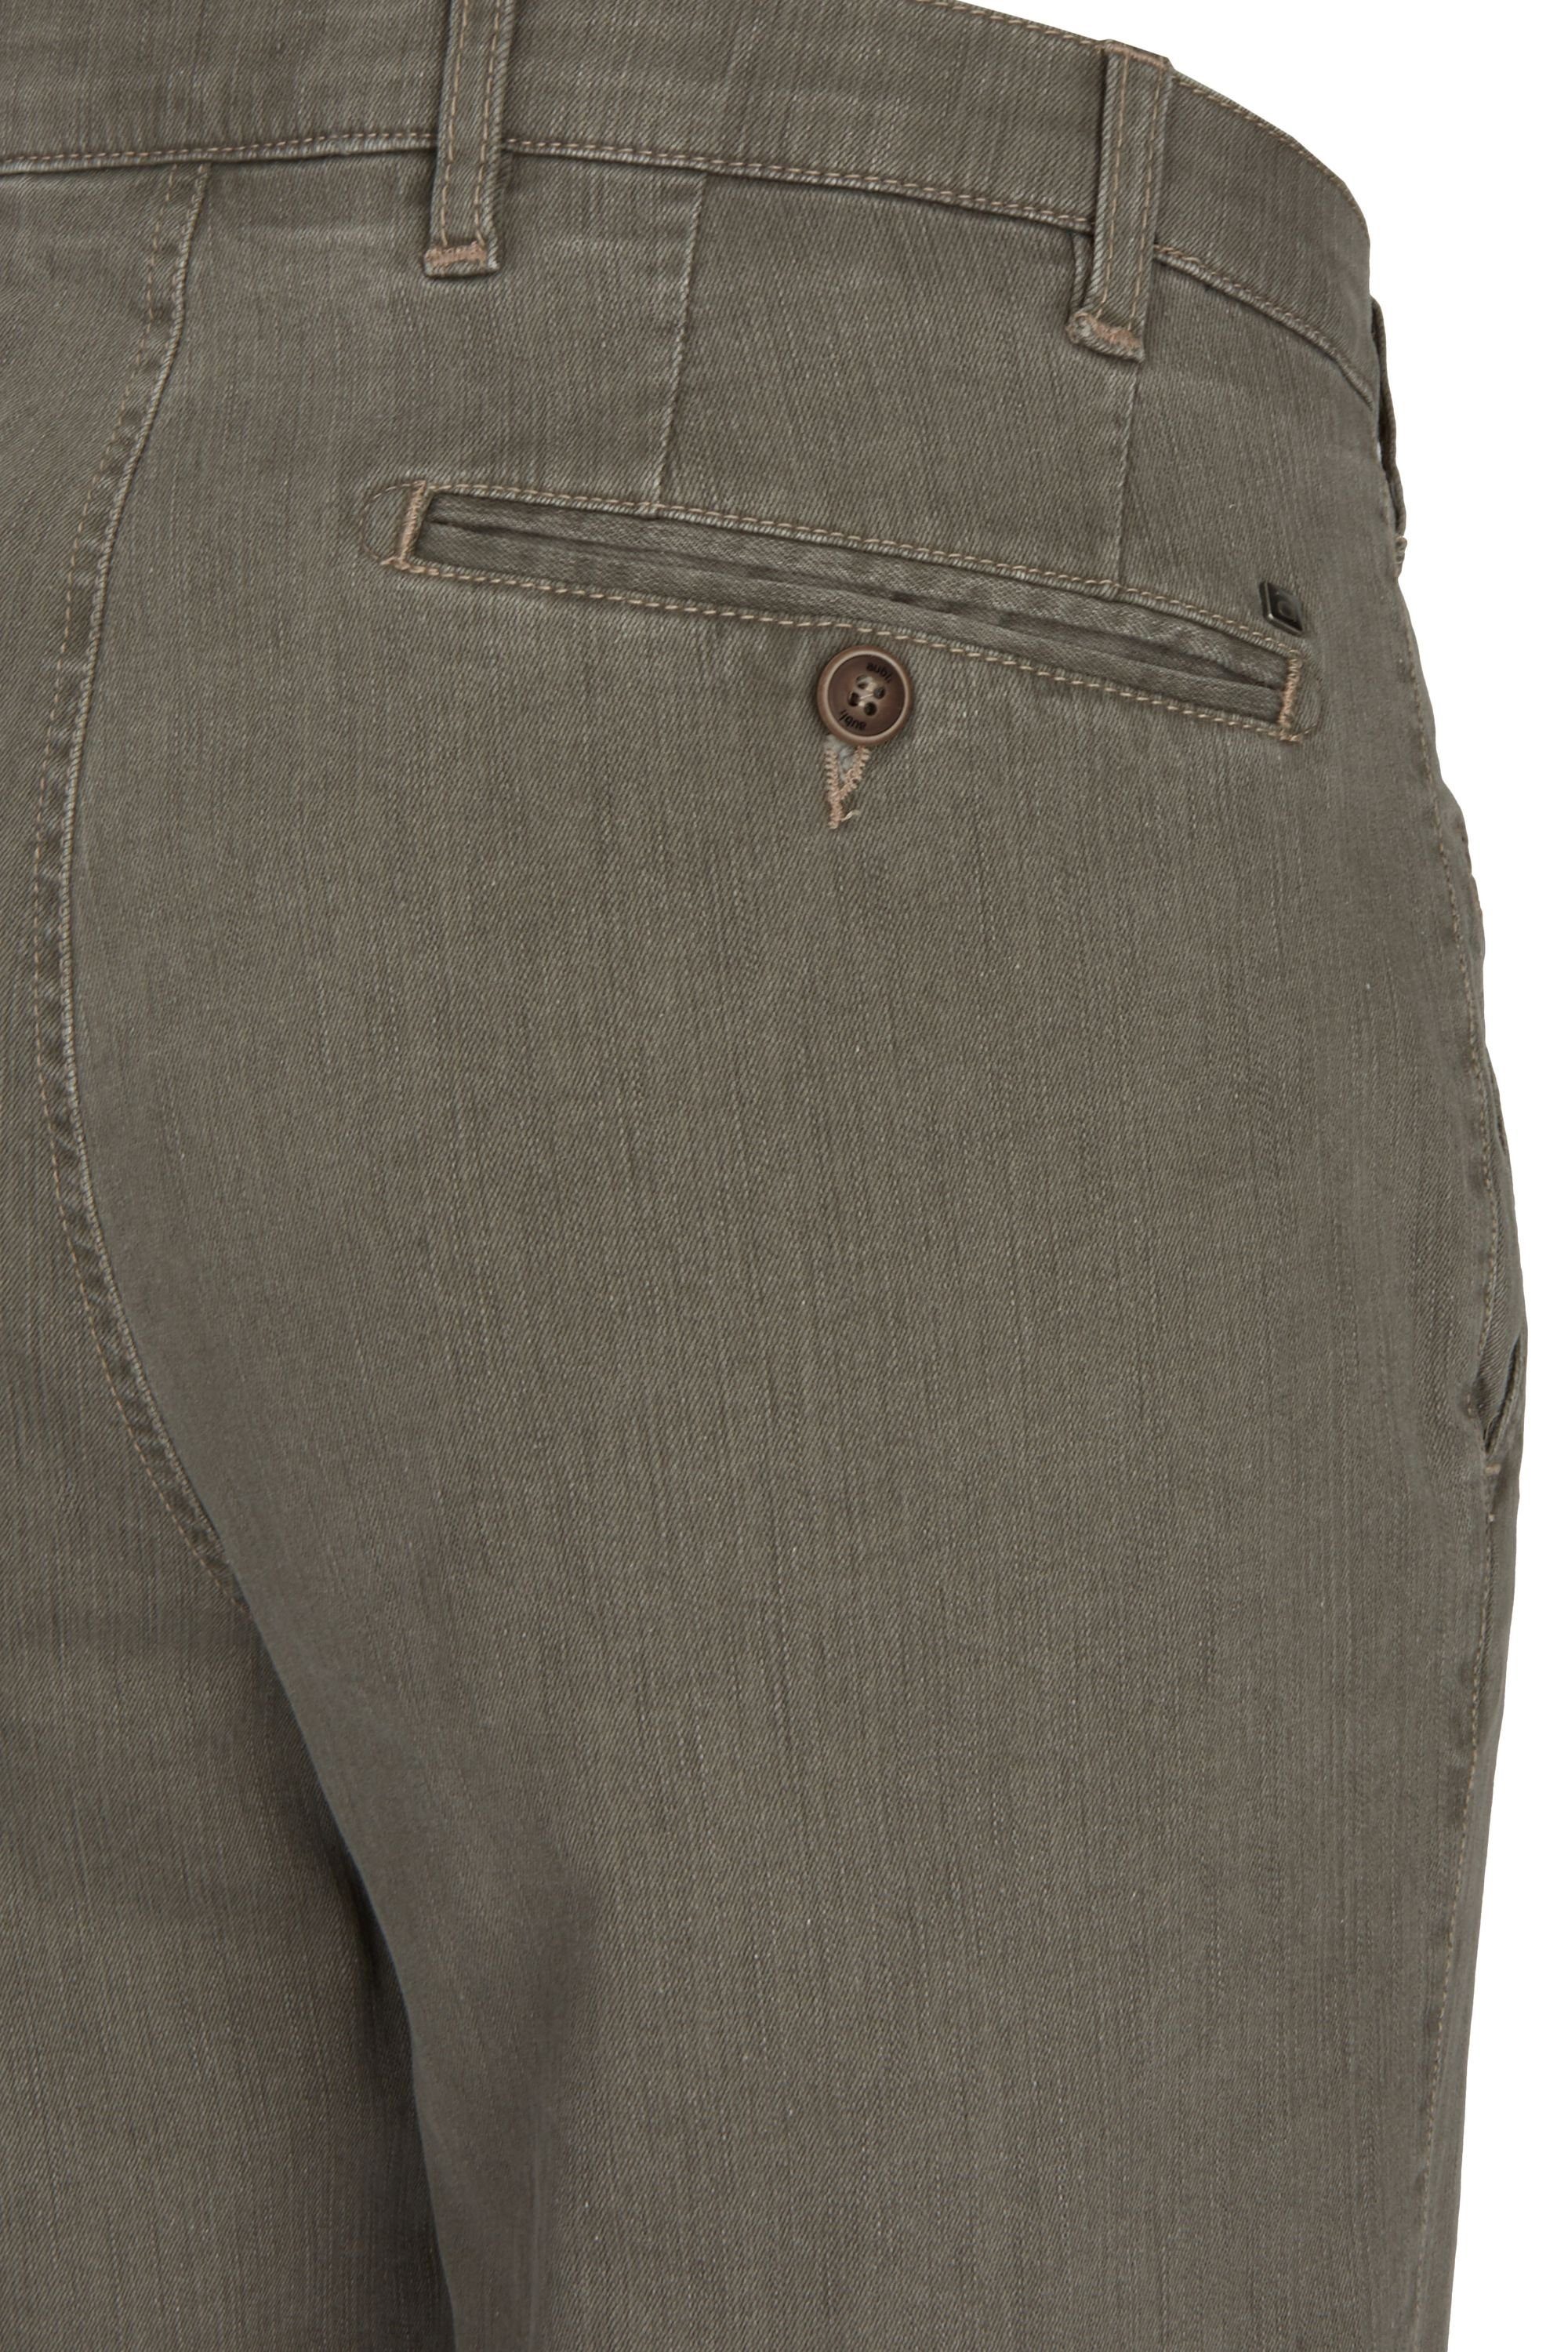 olive Jeans Hose 526 Modell Flex Perfect (24) aubi: aubi Stretch aus Sommer Herren Jeans Fit Bequeme Baumwolle High